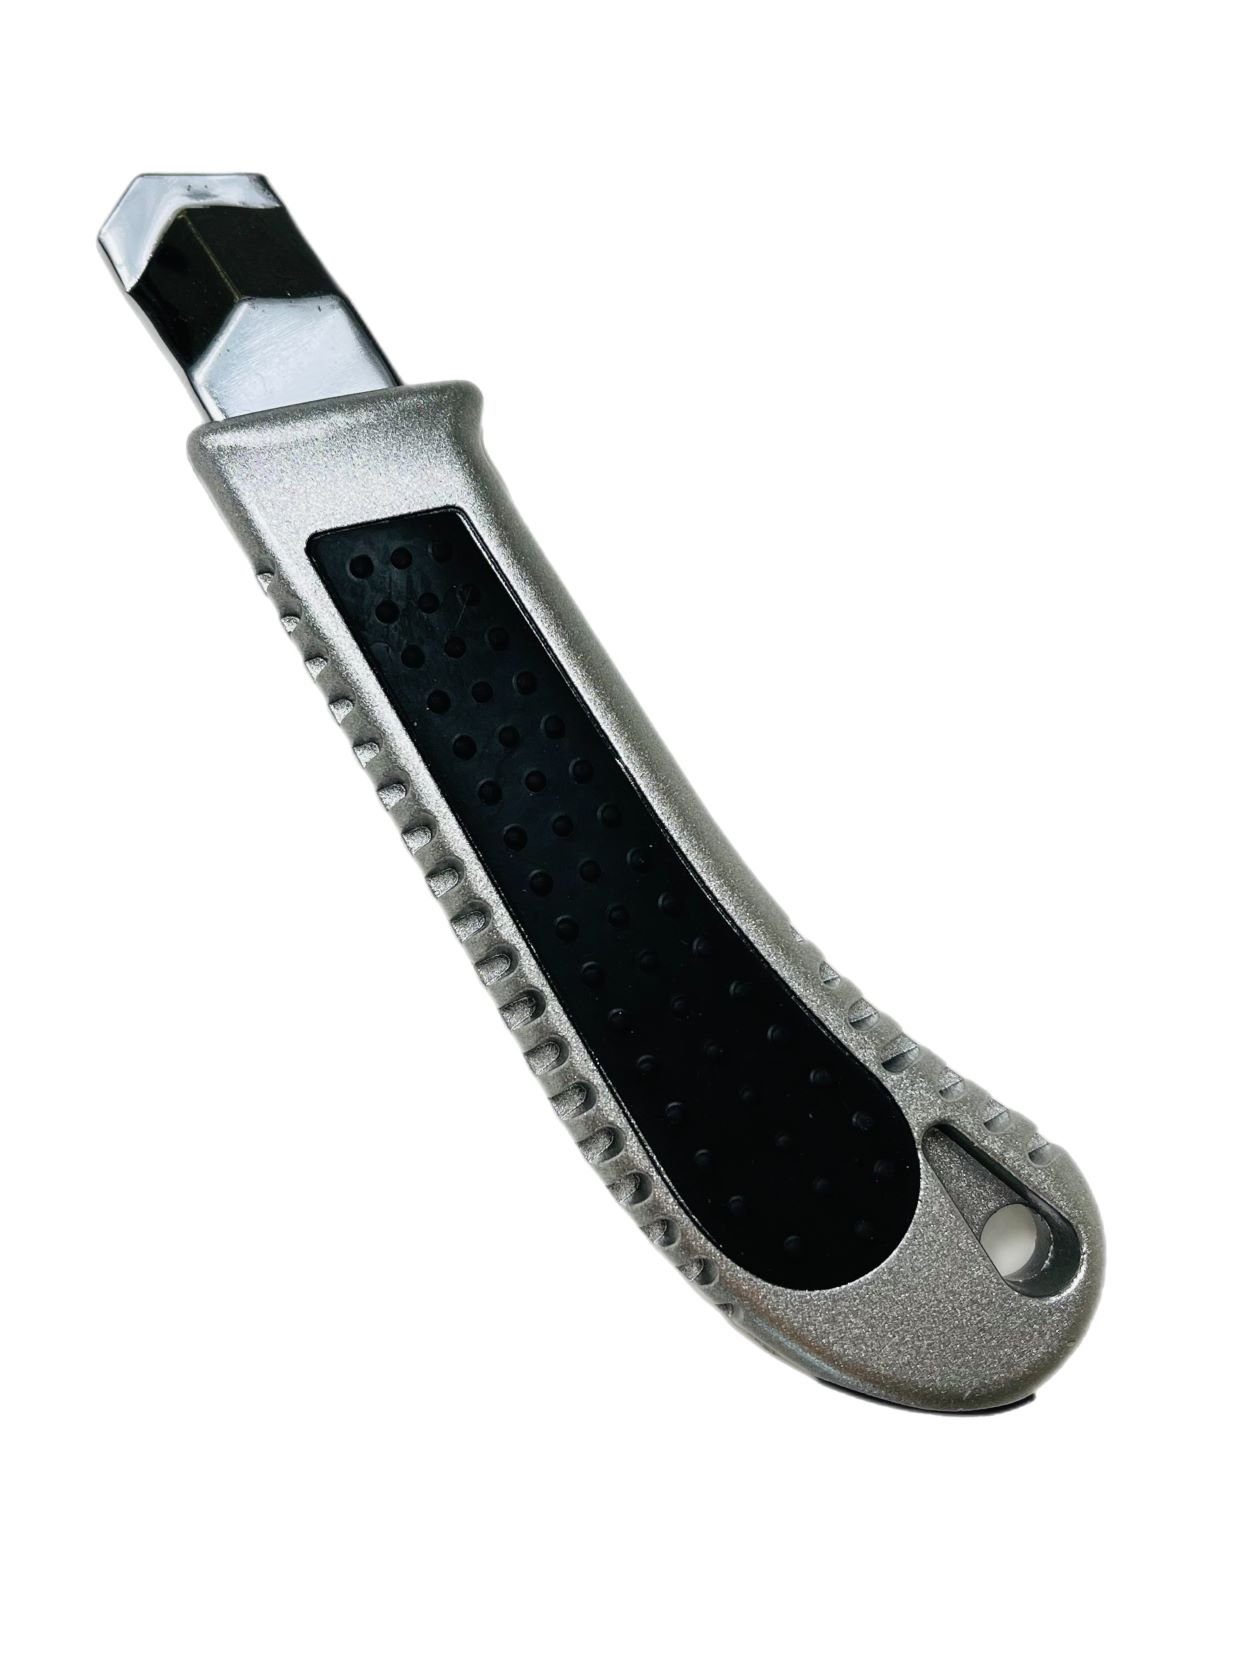 VaGo-Tools Teppichmesser 24 Teppichmesser 18mm Stück, Cuttermesser (Packung) Cutter